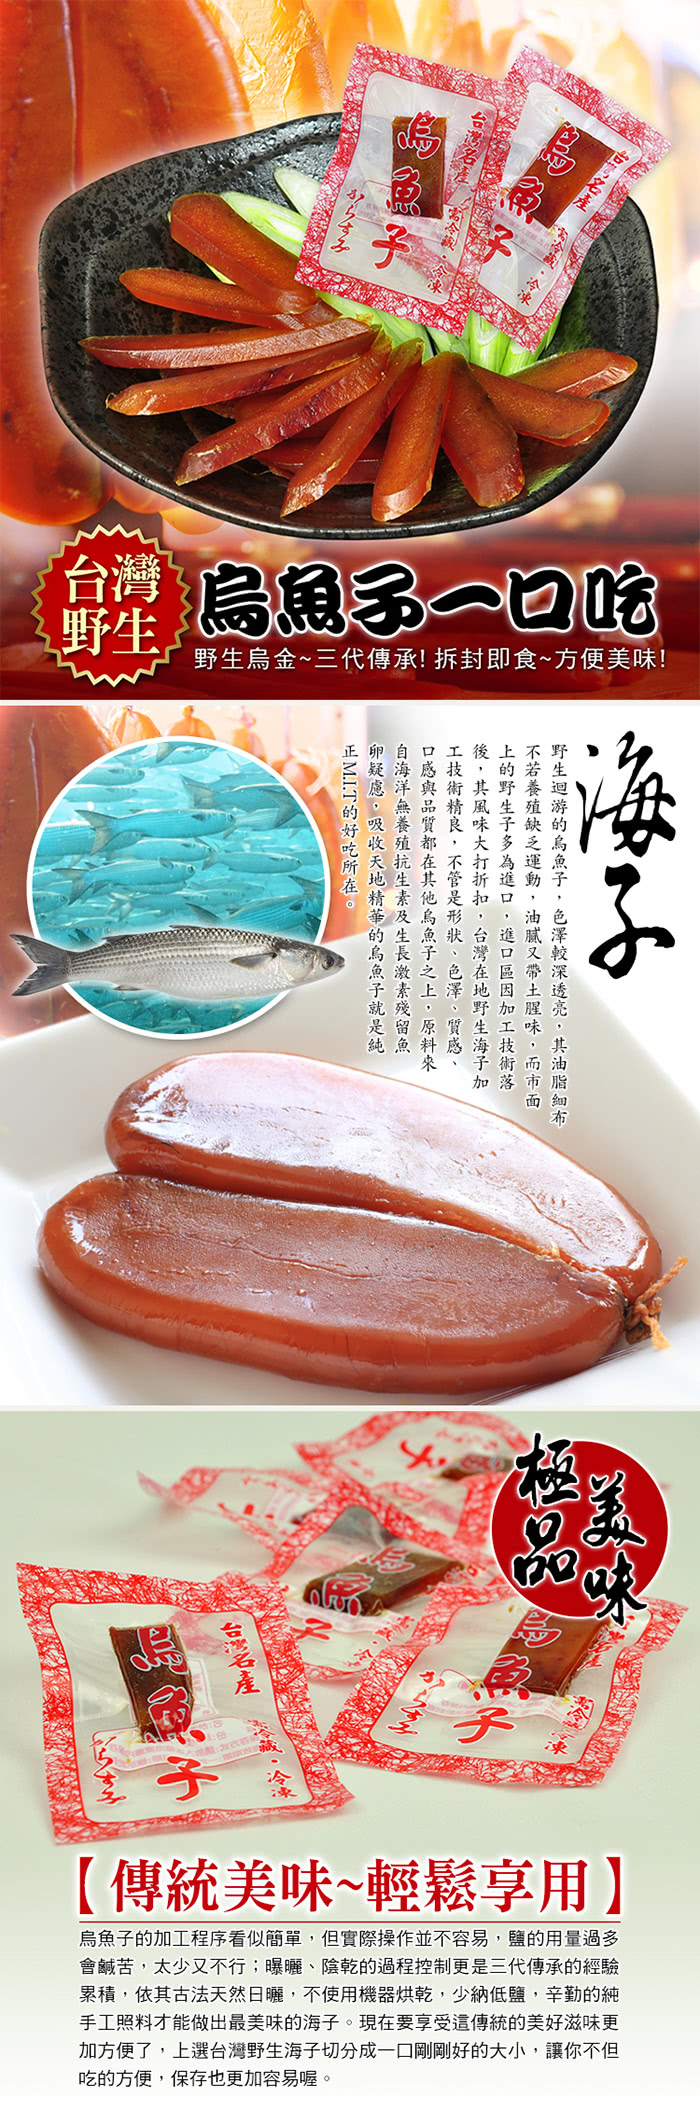 【賀鮮生】野生烏魚子一口吃20包(5g/包)